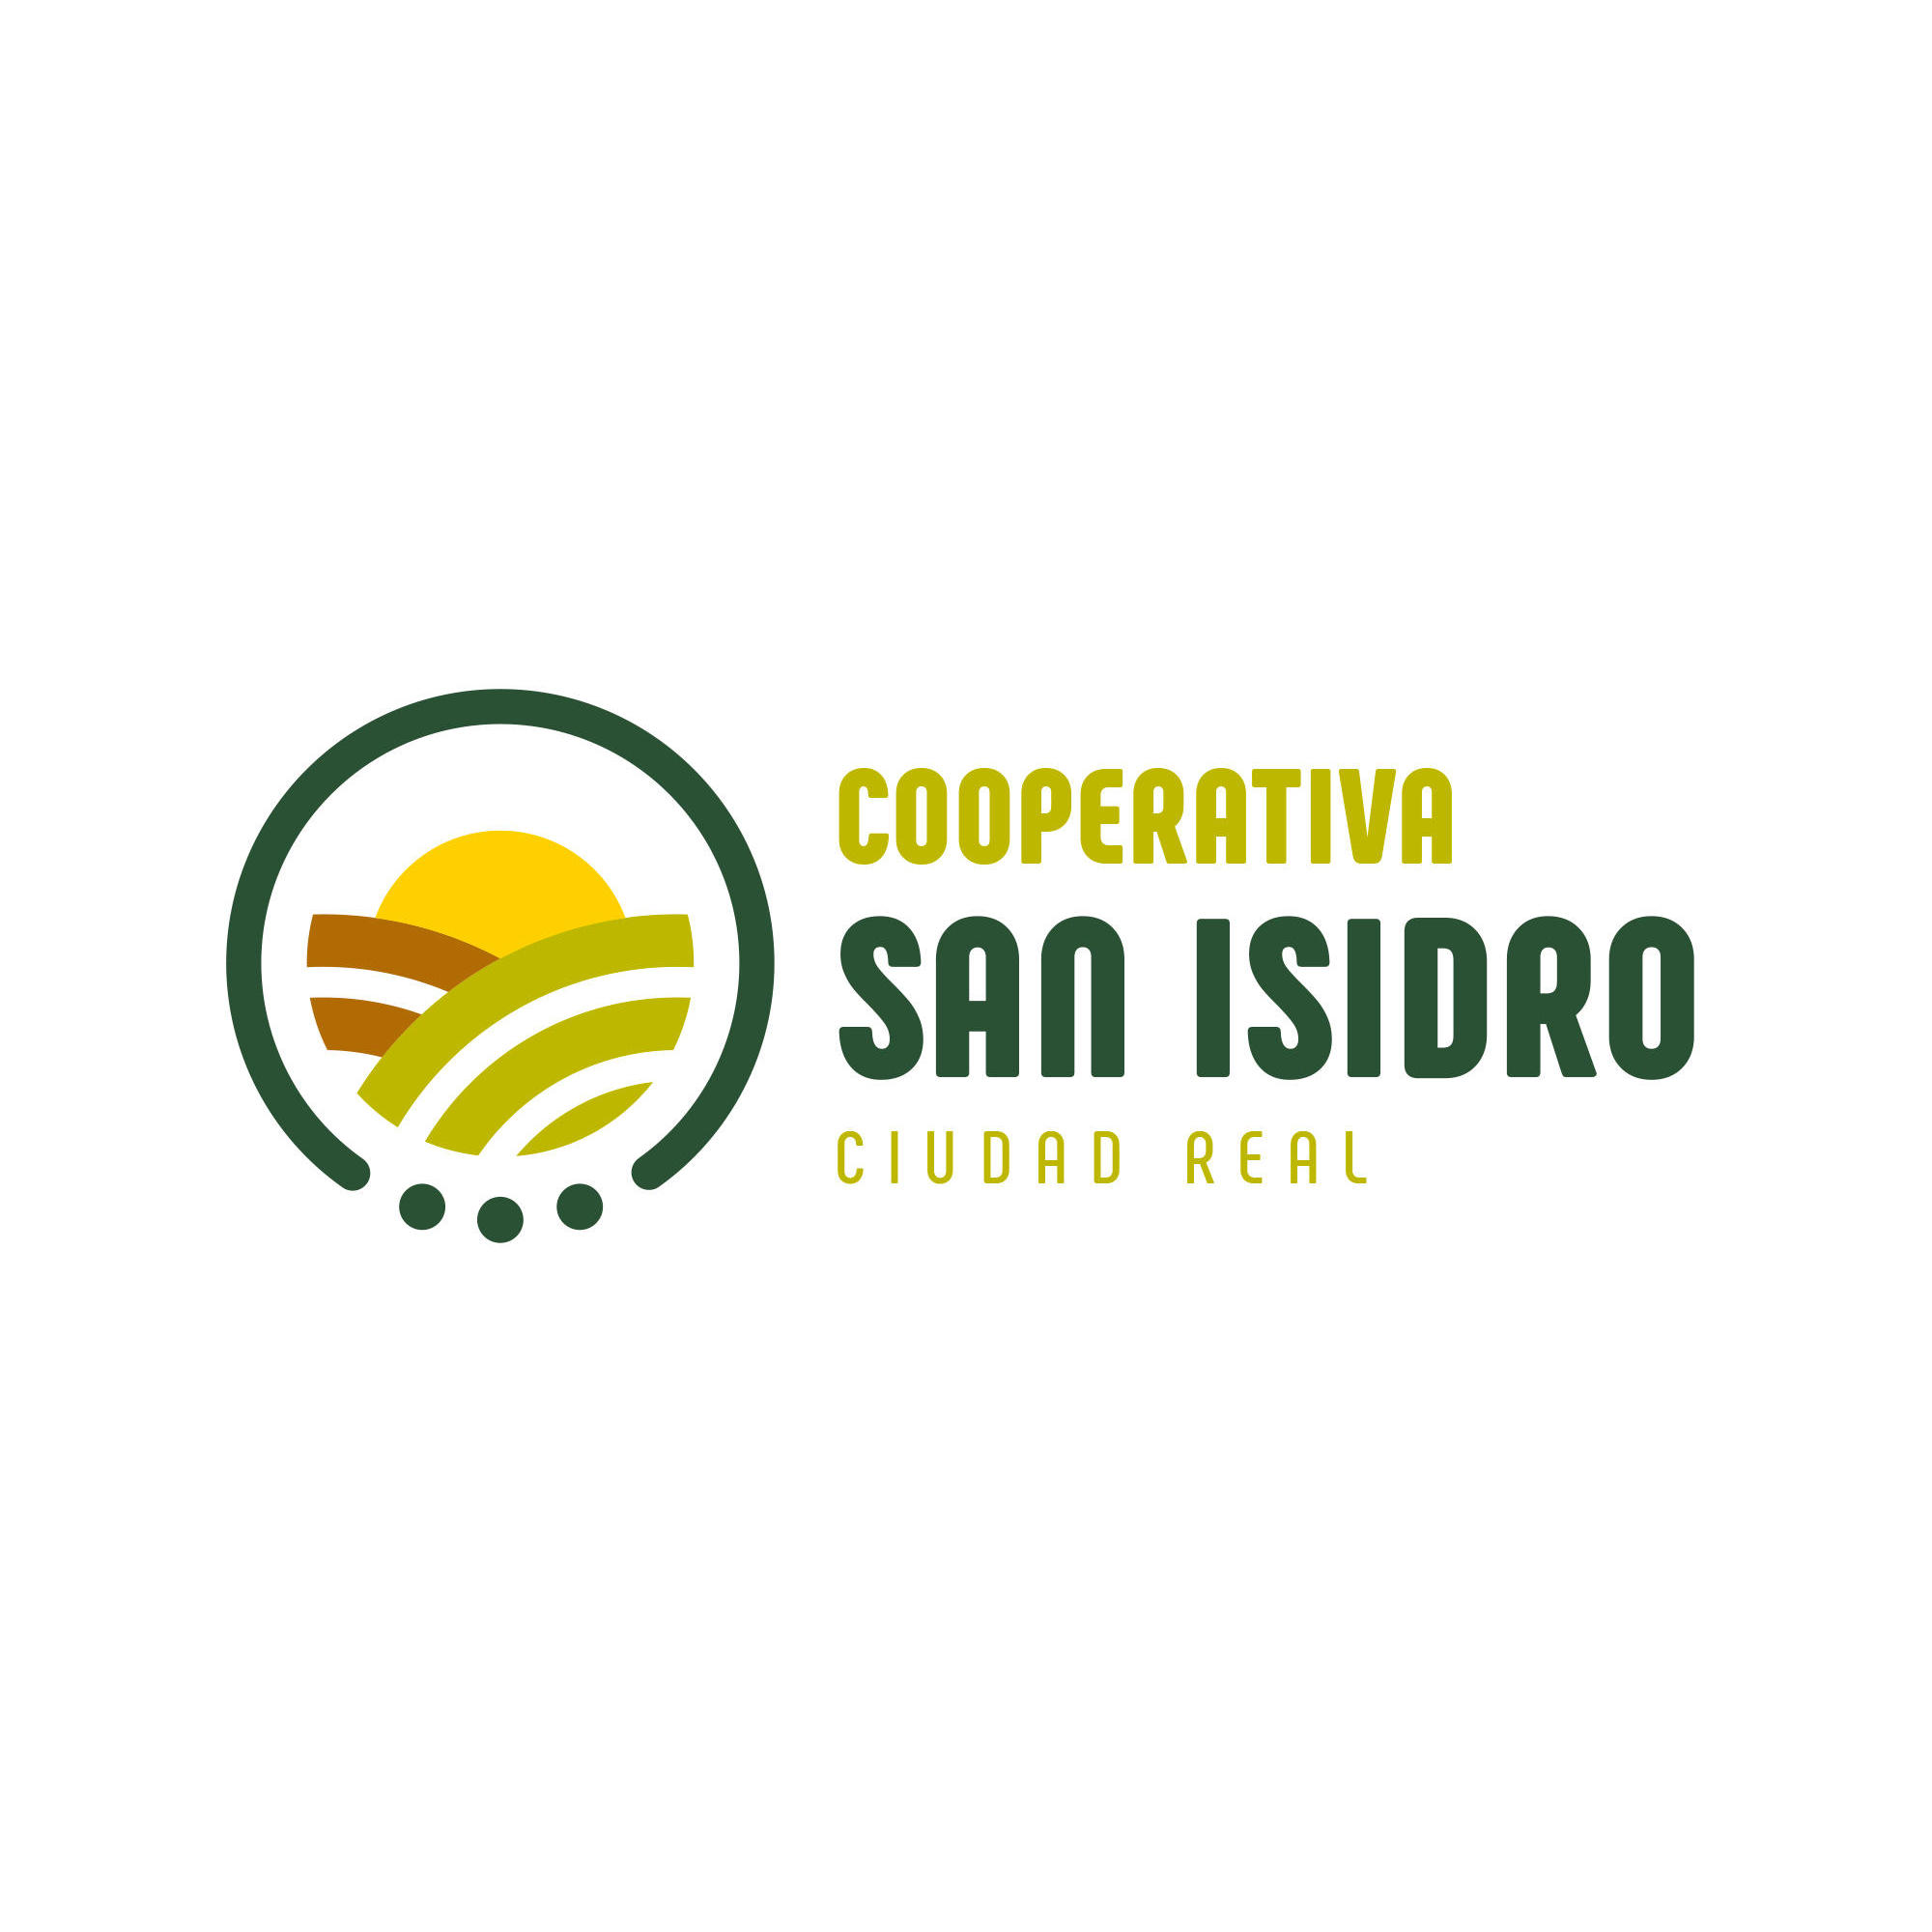 Cooperativa San Isidro De Ciudad Real Logo